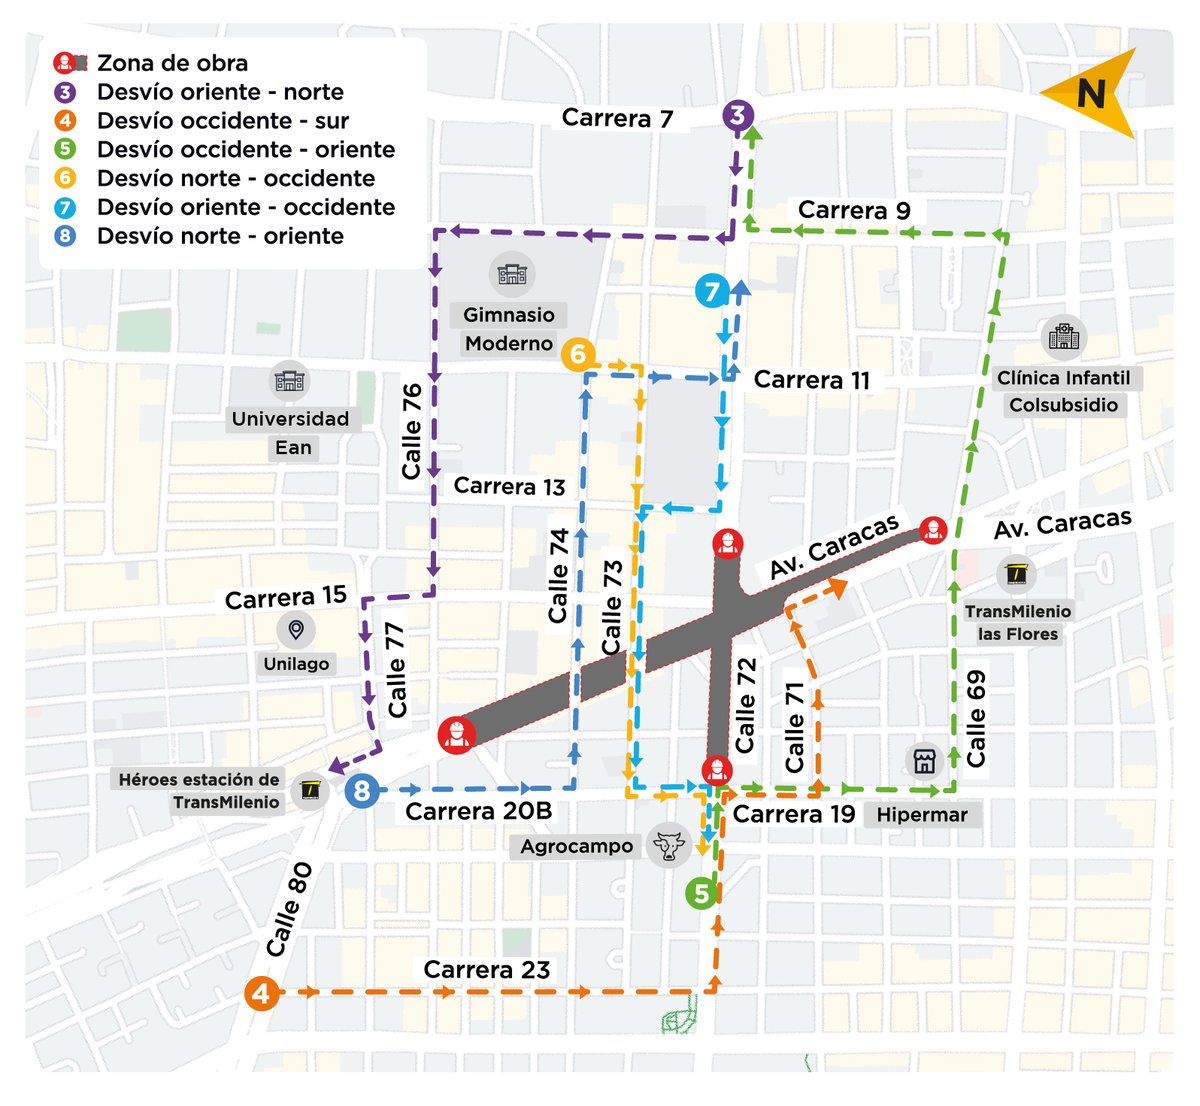 🚨Desde este martes 14 de mayo, la av. Caracas estará cerrada entre calles 69 y 77. @TransMilenio transitará con normalidad por el carril exclusivo✅; los carros particulares 🚗 deberán tomar nuevos desvíos habilitados por @SectorMovilidad #ElMetroAvanza 👉metrodebogota.gov.co/noticias/conti…